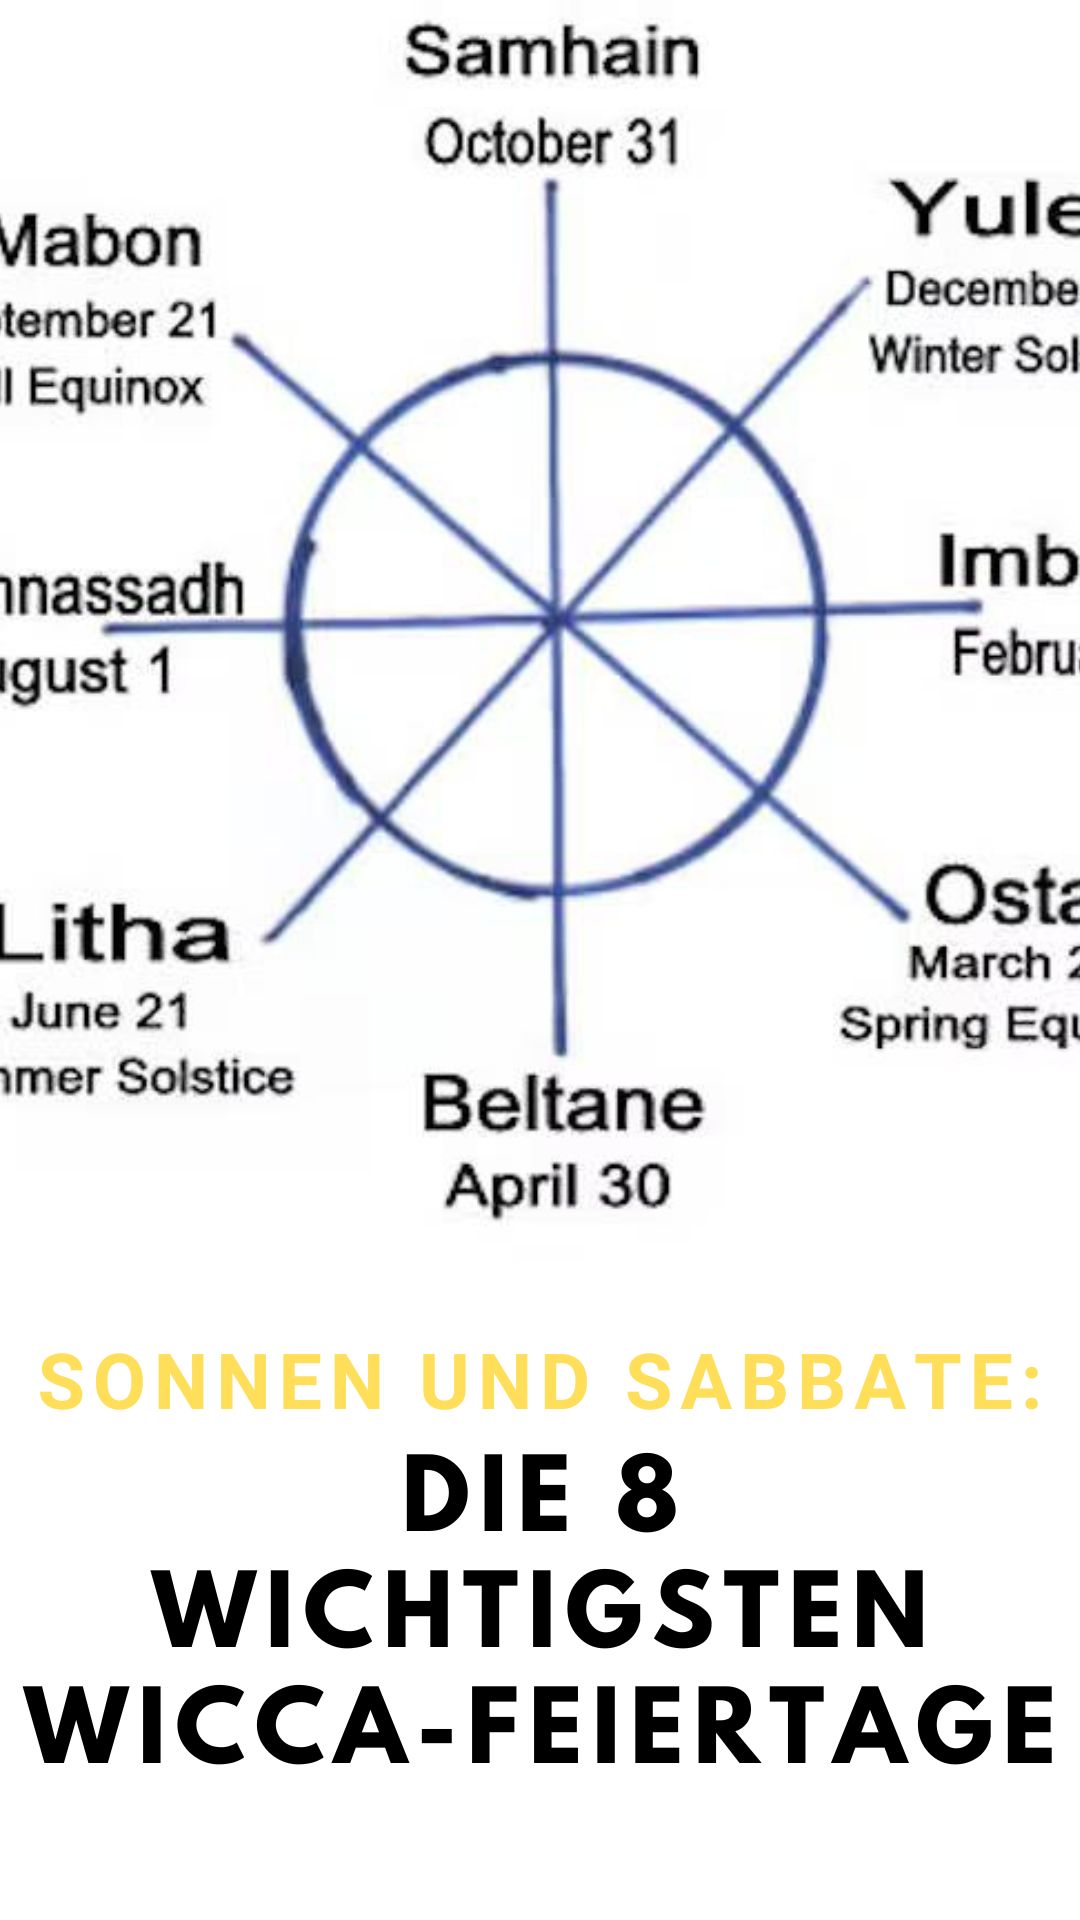 Sonnen-und-Sabbate-Die-8-wichtigsten-Wicca-Feiertage.